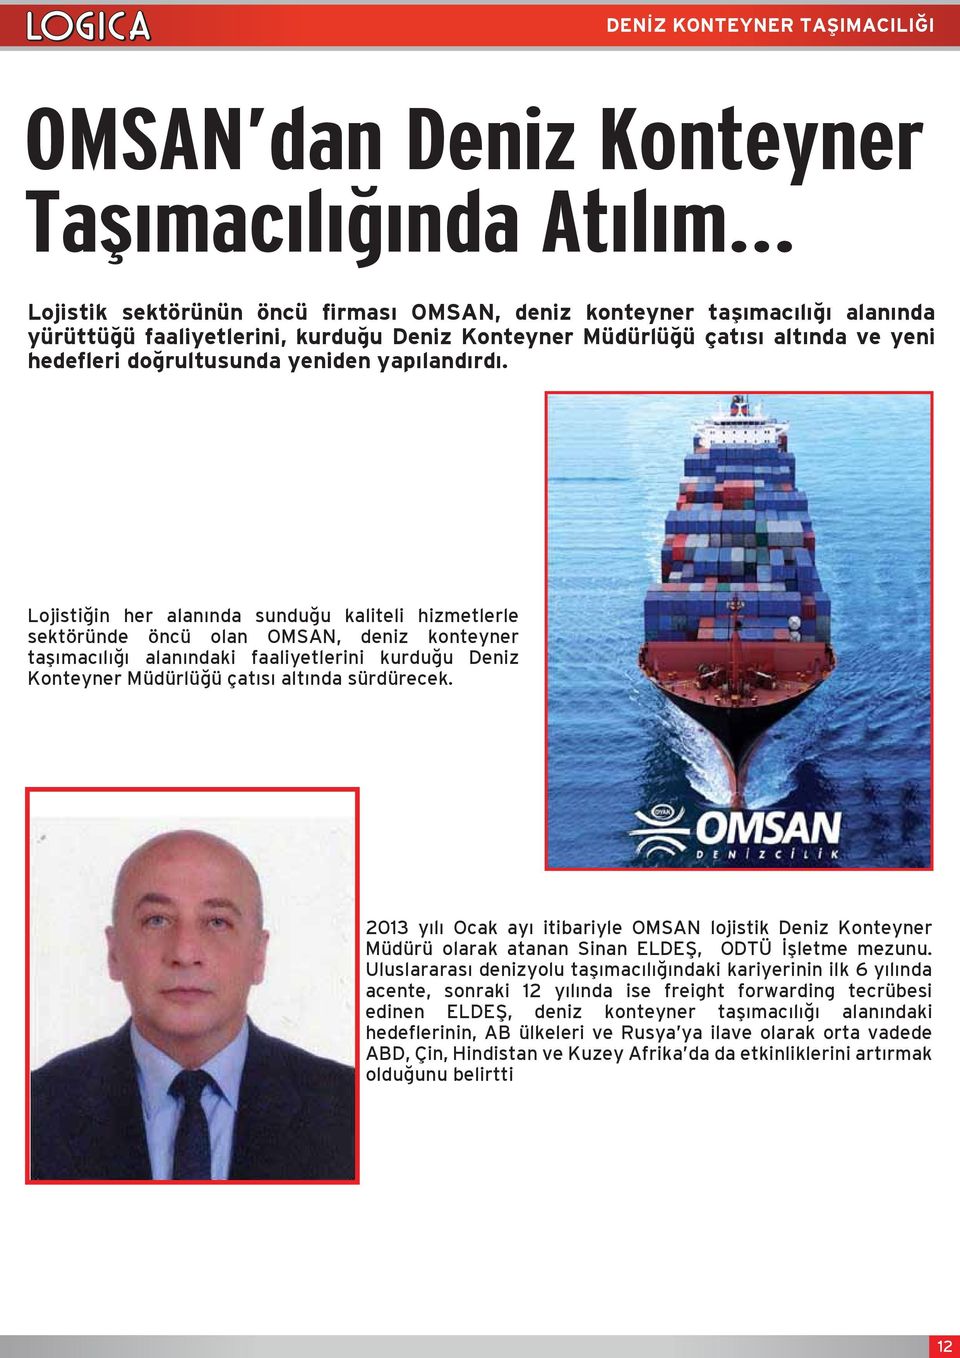 Lojistiğin her alanında sunduğu kaliteli hizmetlerle sektöründe öncü olan OMSAN, deniz konteyner taşımacılığı alanındaki faaliyetlerini kurduğu Deniz Konteyner Müdürlüğü çatısı altında sürdürecek.